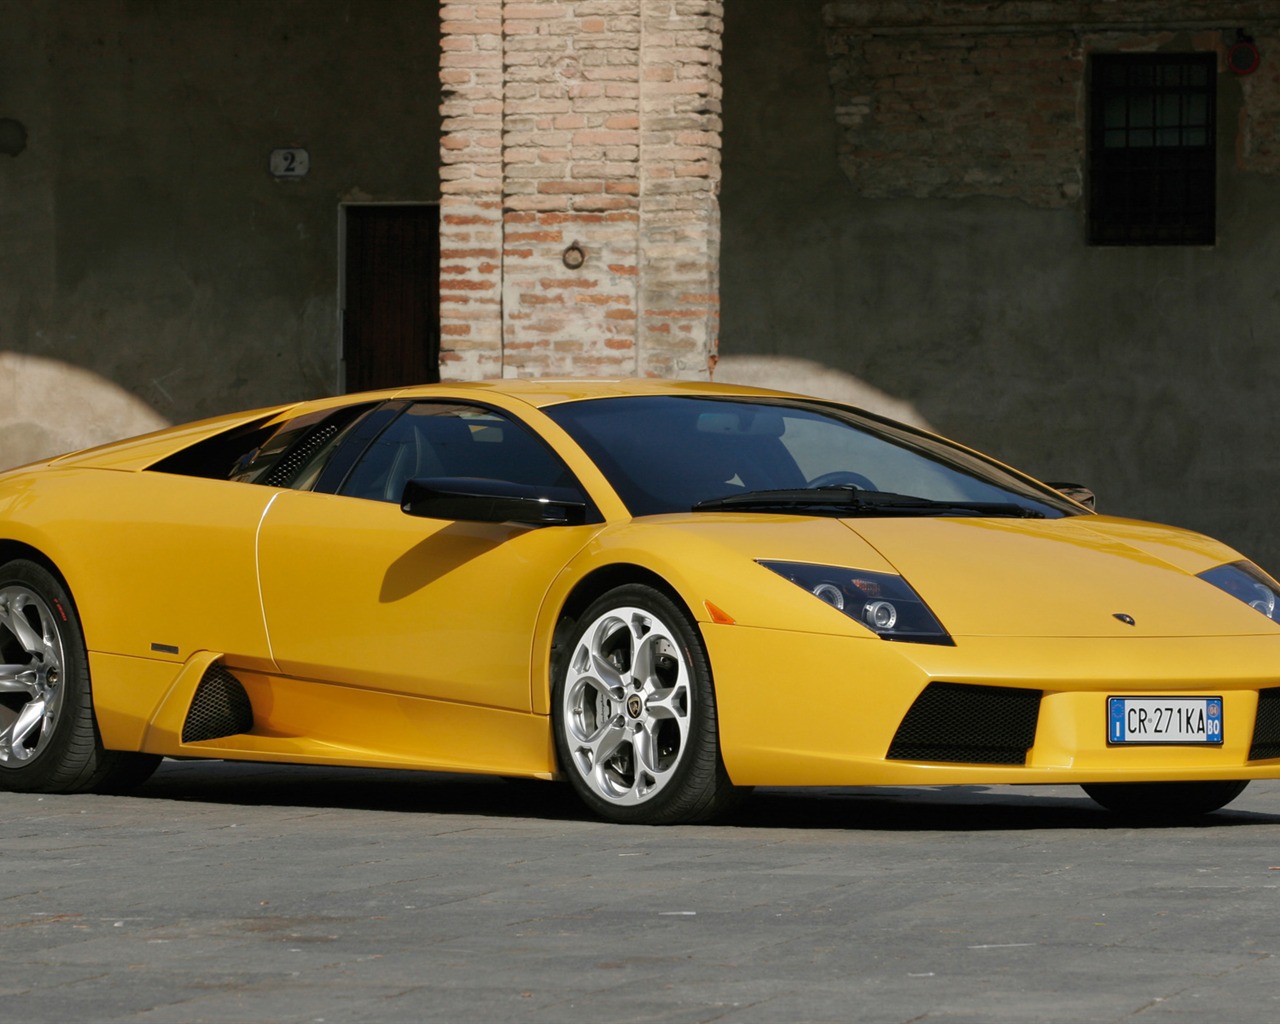 Lamborghini Murcielago - 2005 蘭博基尼 #9 - 1280x1024